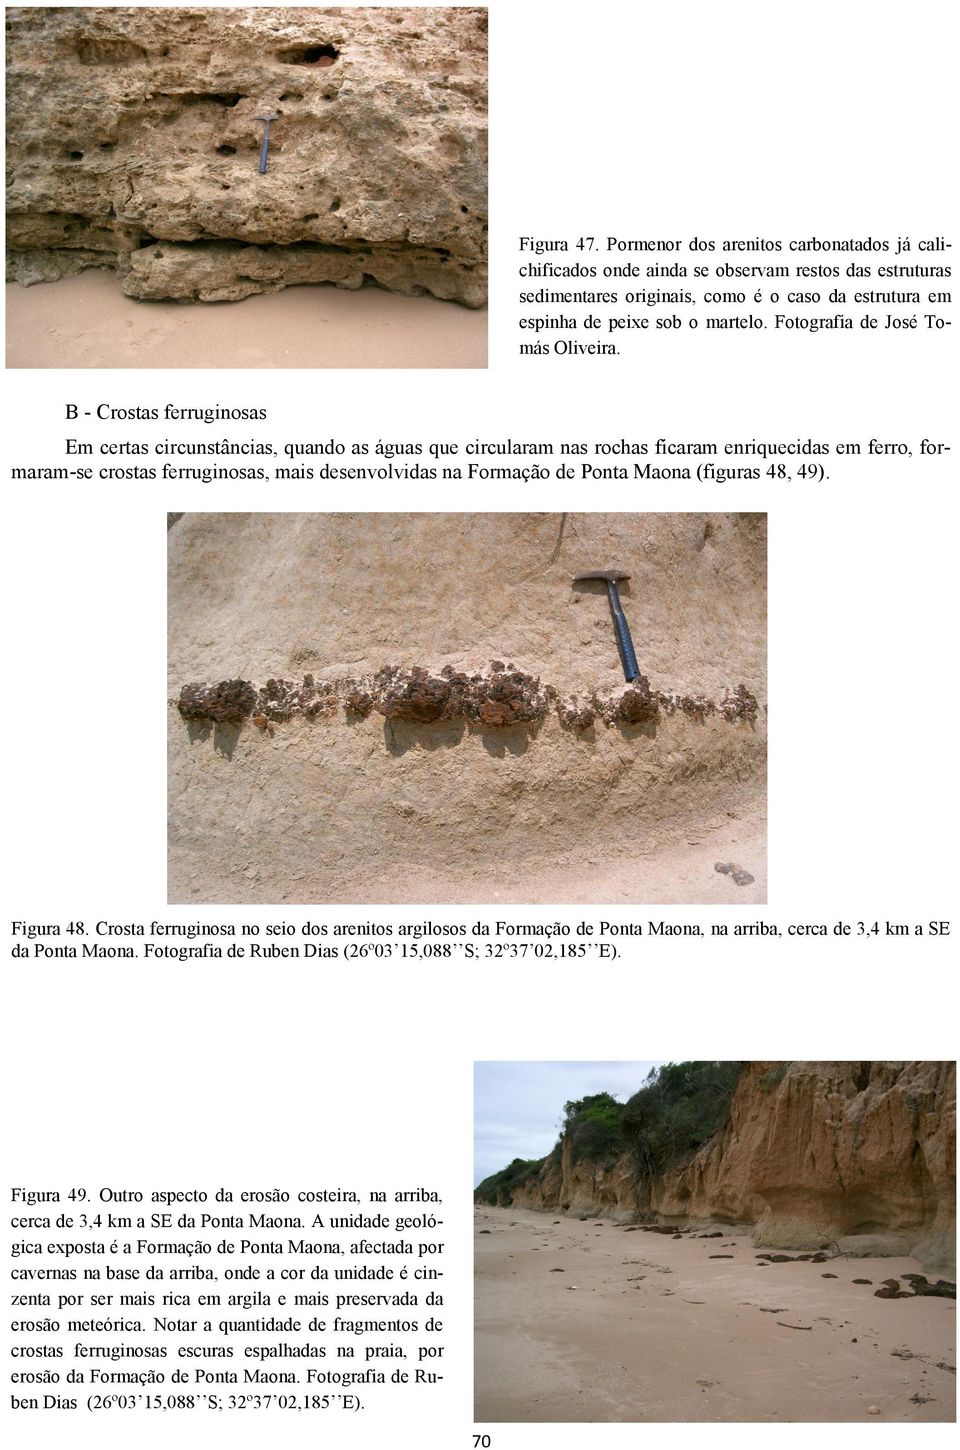 B - Crostas ferruginosas Em certas circunstâncias, quando as águas que circularam nas rochas ficaram enriquecidas em ferro, formaram-se crostas ferruginosas, mais desenvolvidas na Formação de Ponta